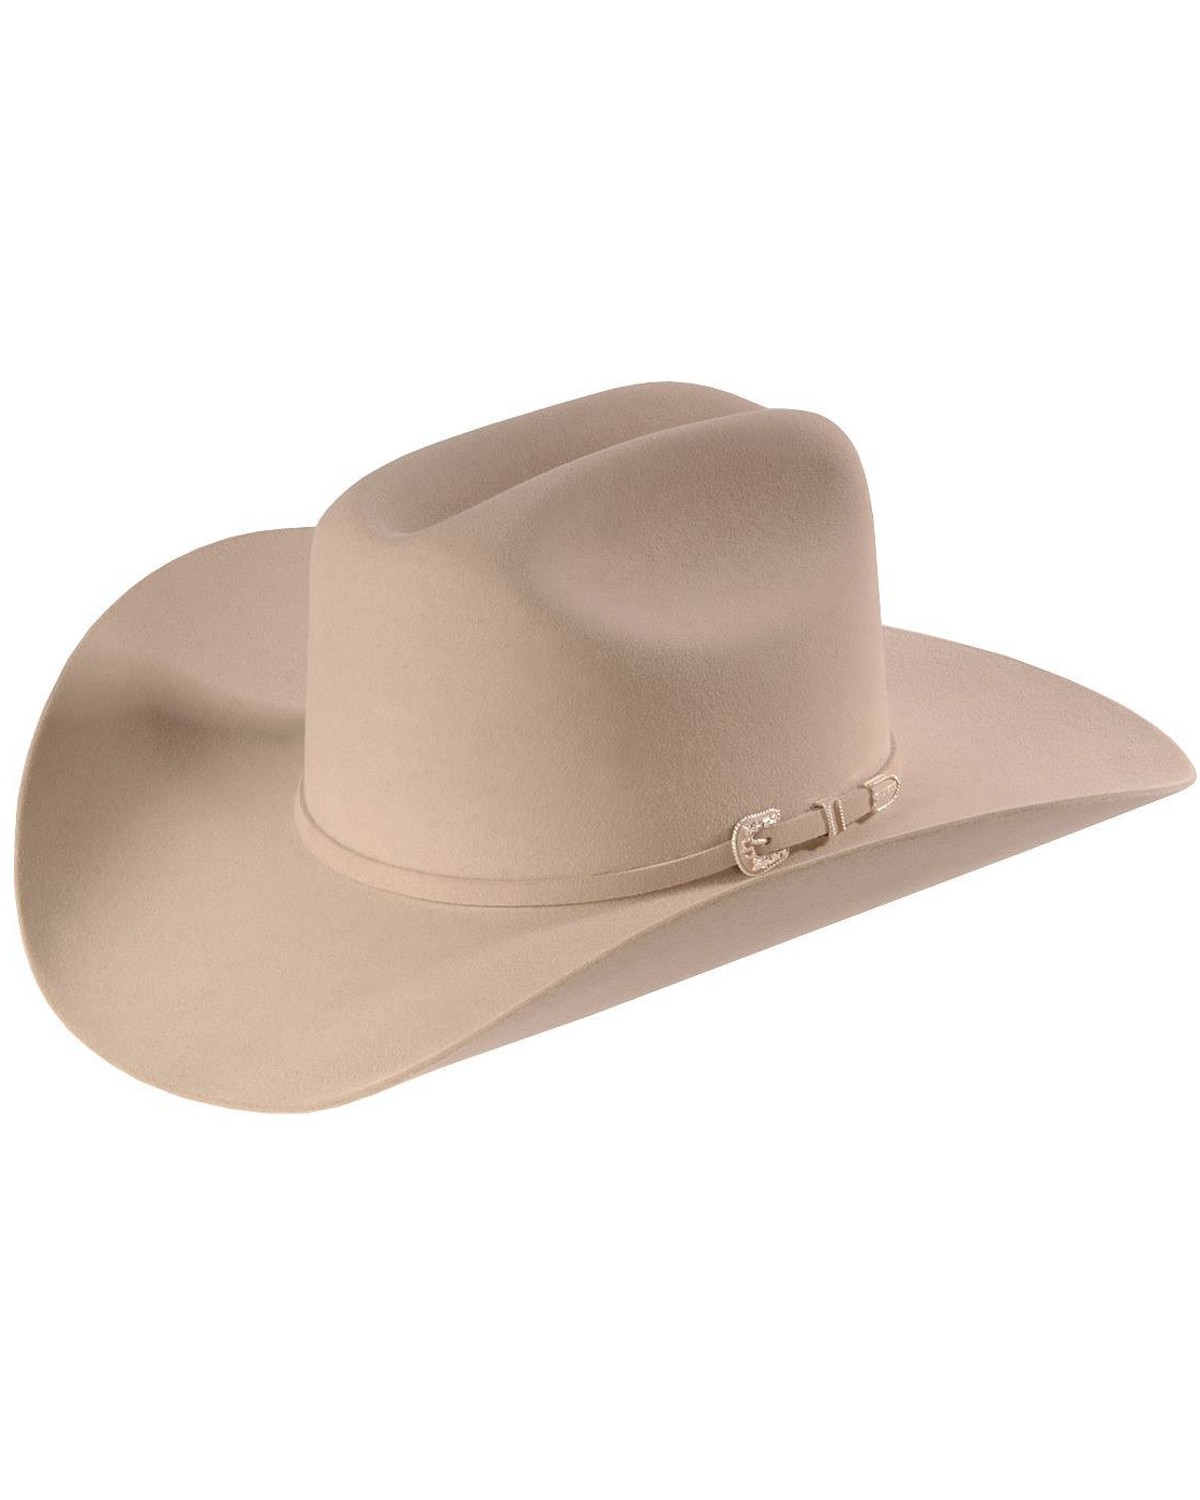 White & Natural Cowboy Hats